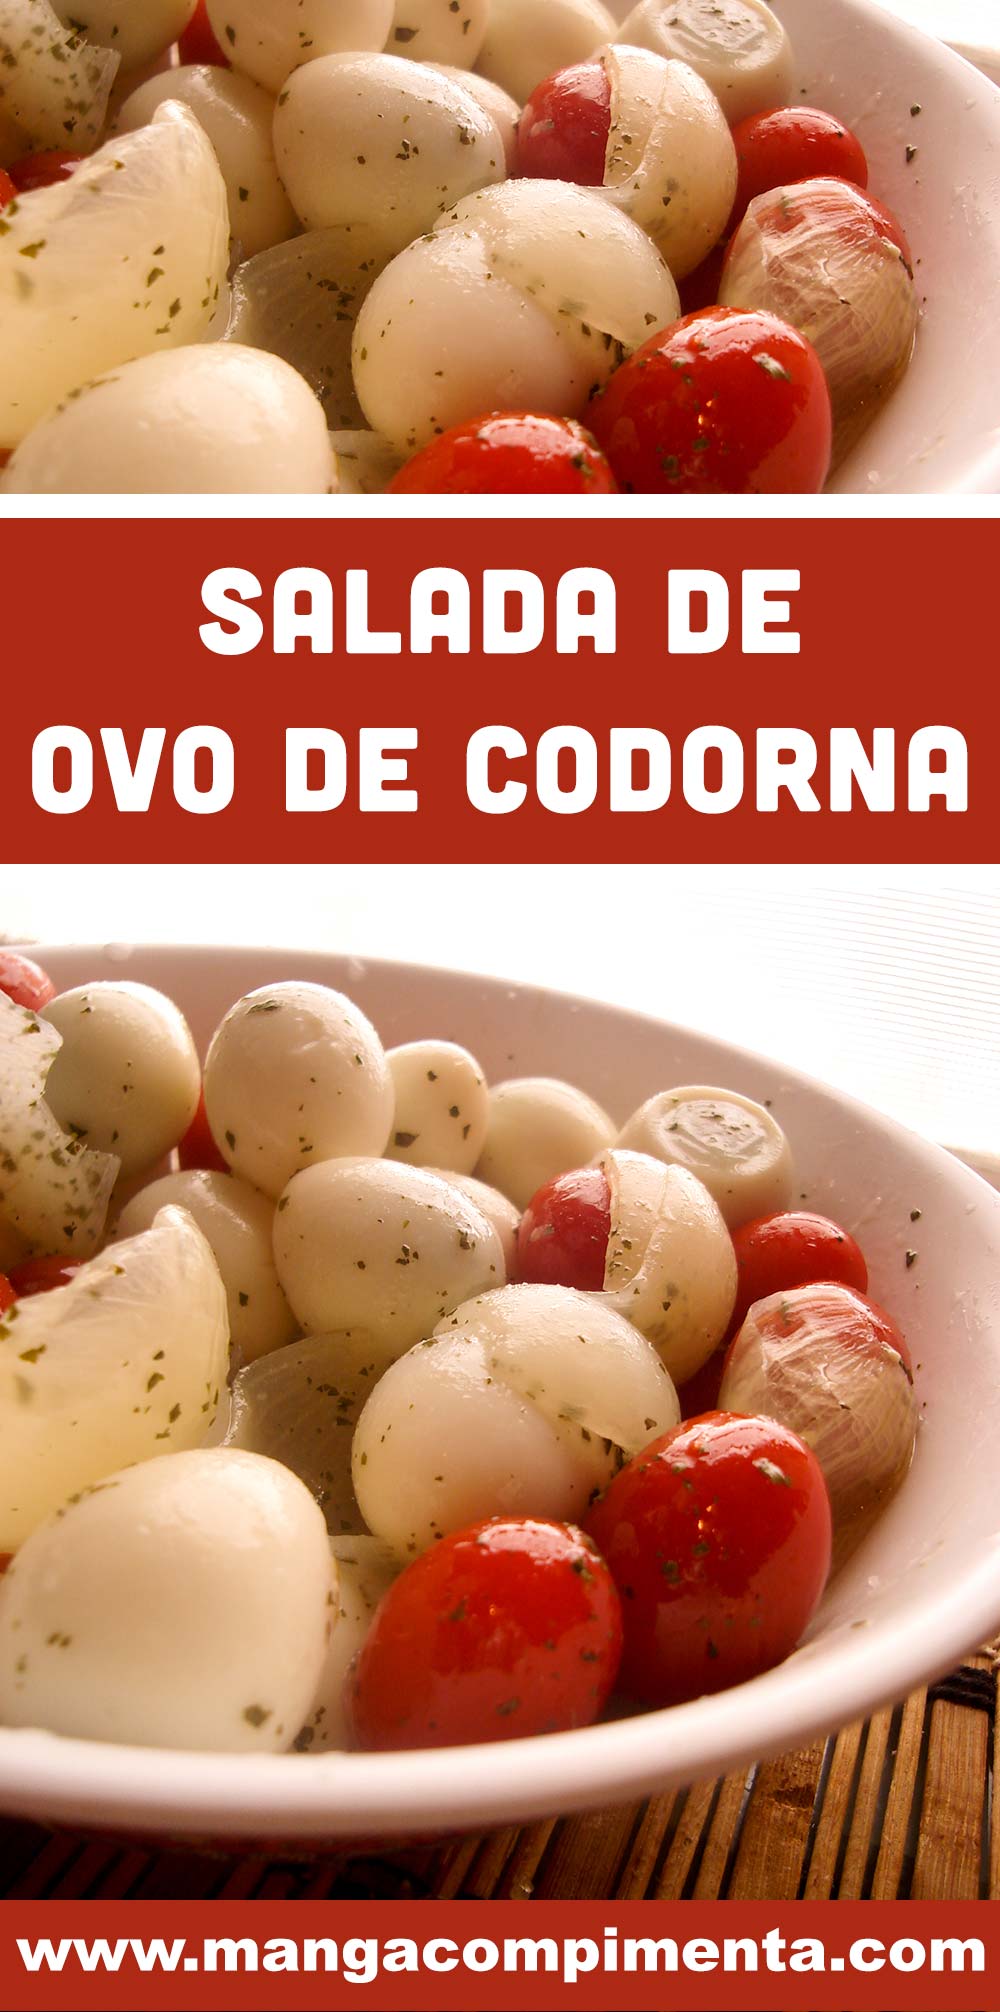 Salada de Ovo de Codorna com Tomate Cereja - um prato que pode ser servido no almoço ou para petiscar com os amigos.